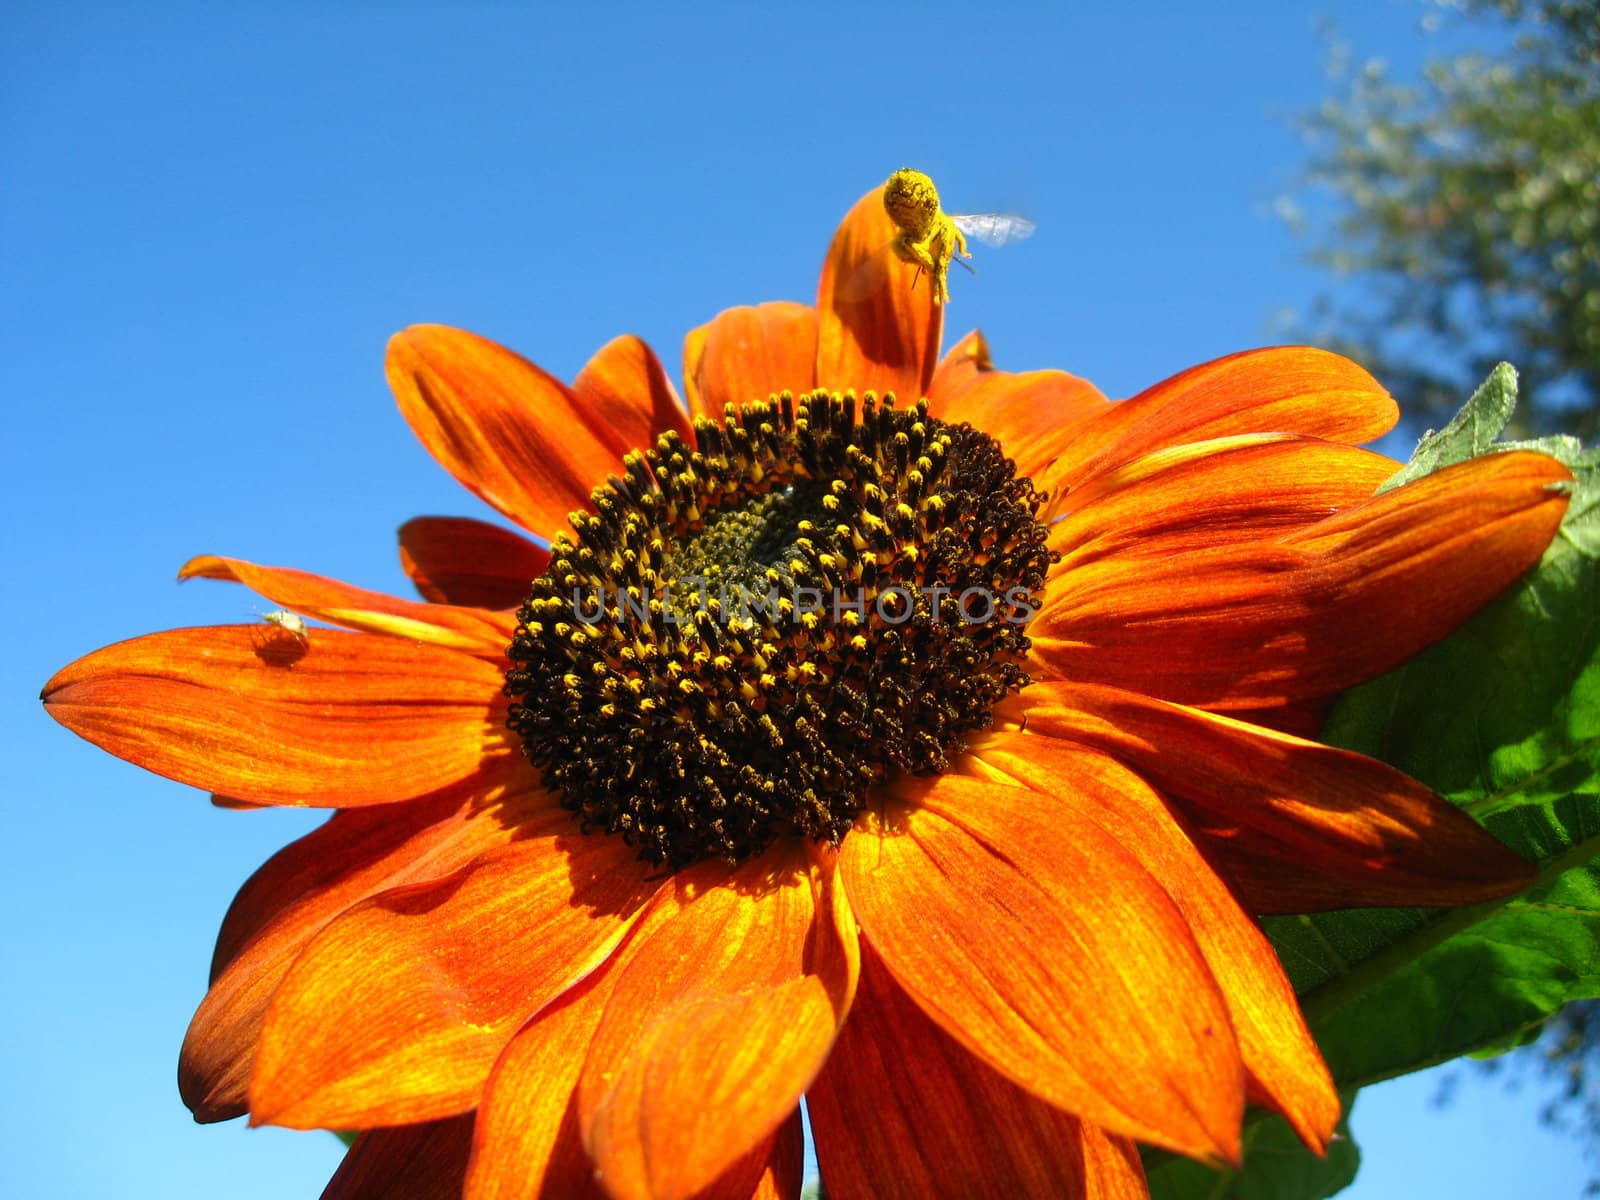 sunflower on the blue sky background by alexmak